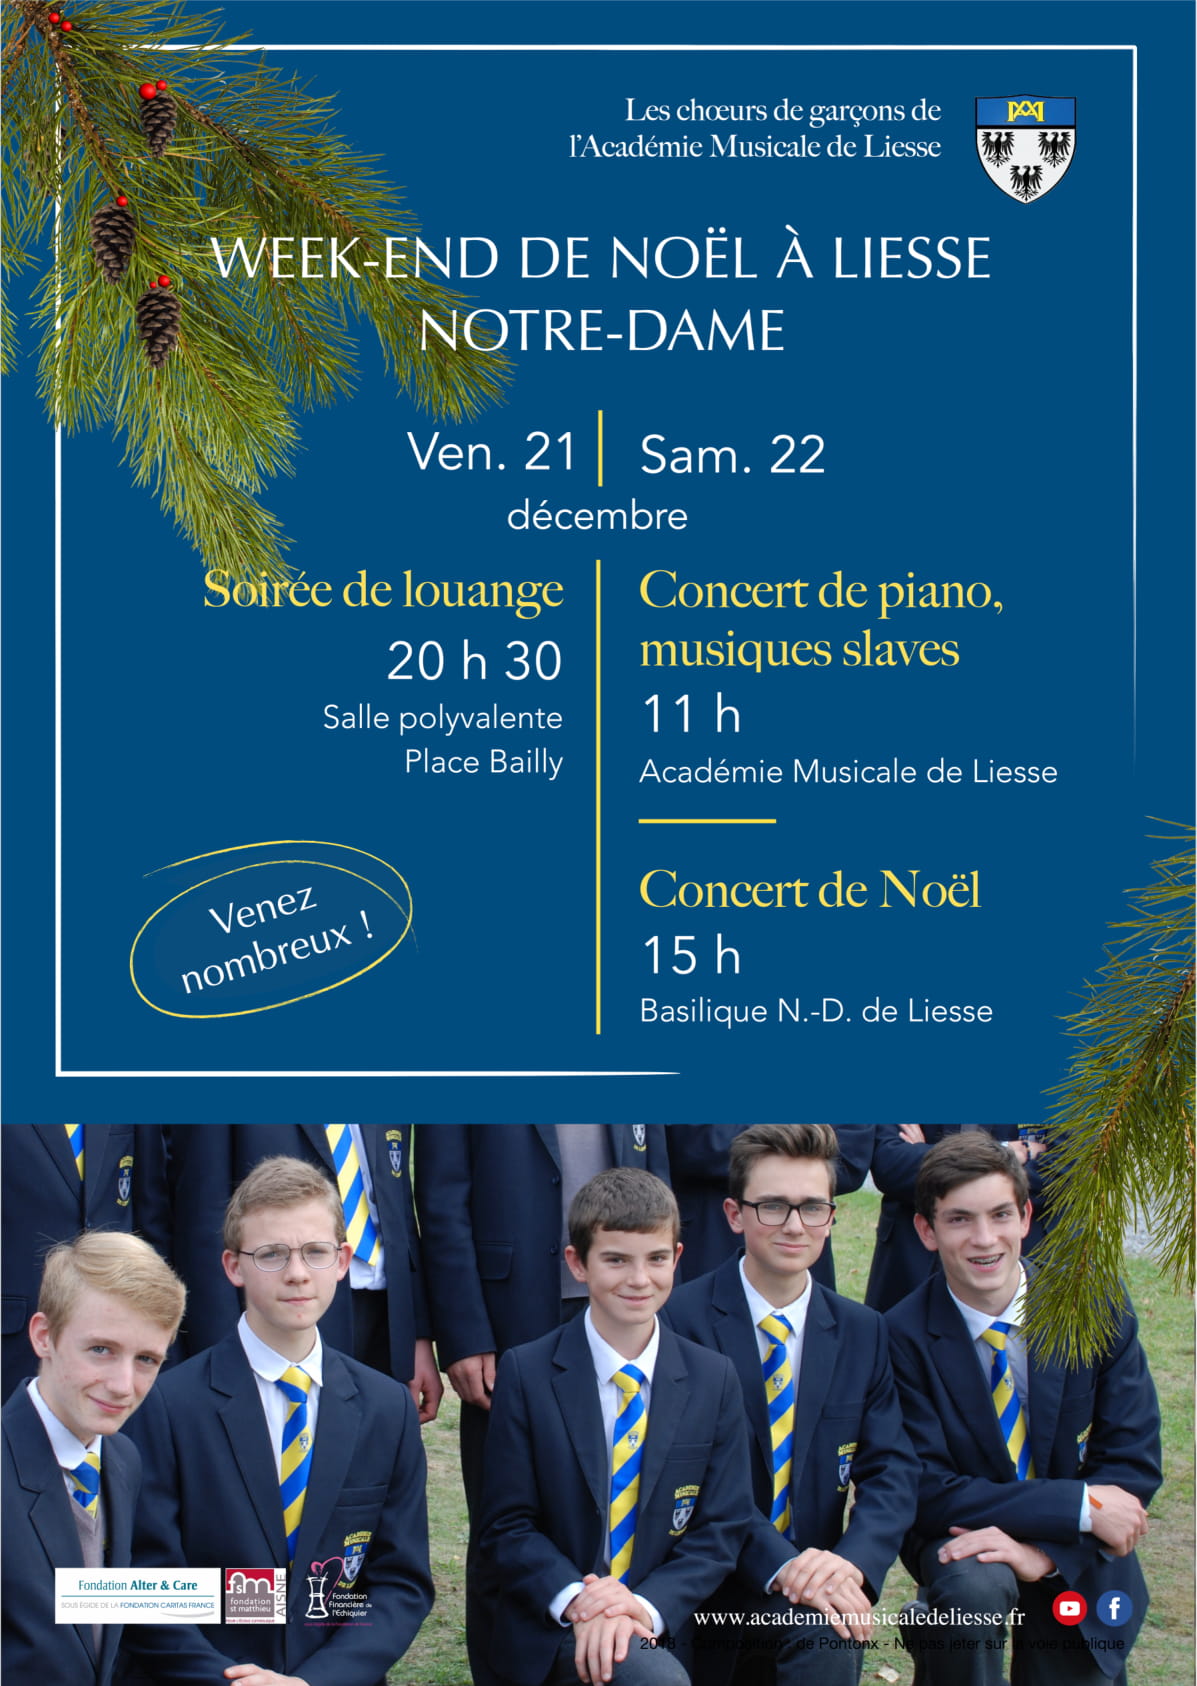 Week-end de Noël les 21 & 22 décembre 2018 à Liesse-Notre-Dame (02) – Académie Musicale de Liesse